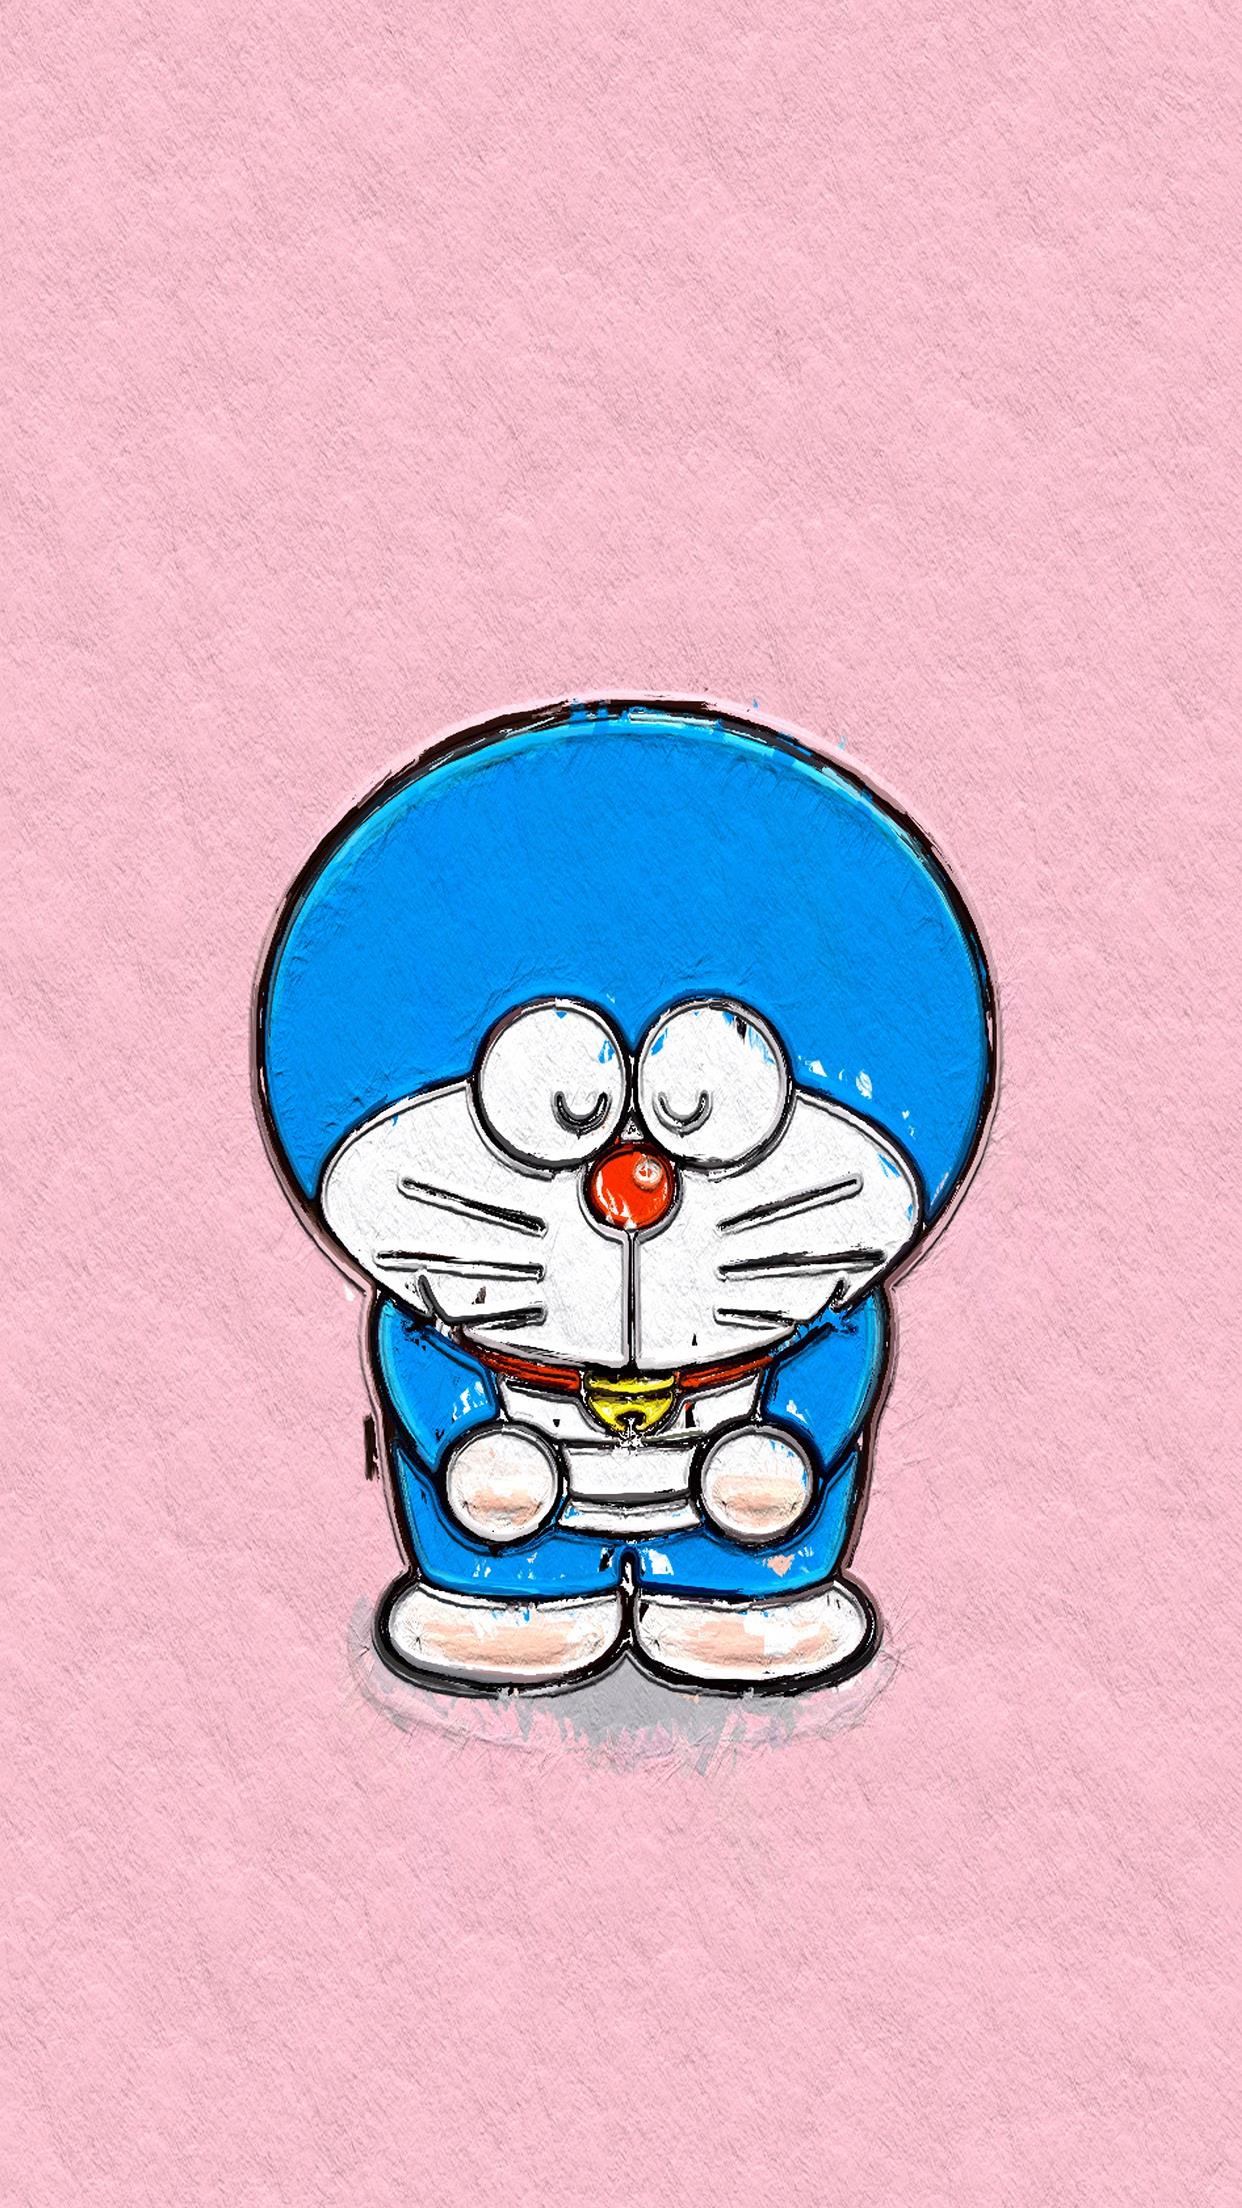 哆啦a梦手机壁纸 (=^¨^=) #机器猫#蓝胖子#手绘卡通壁纸